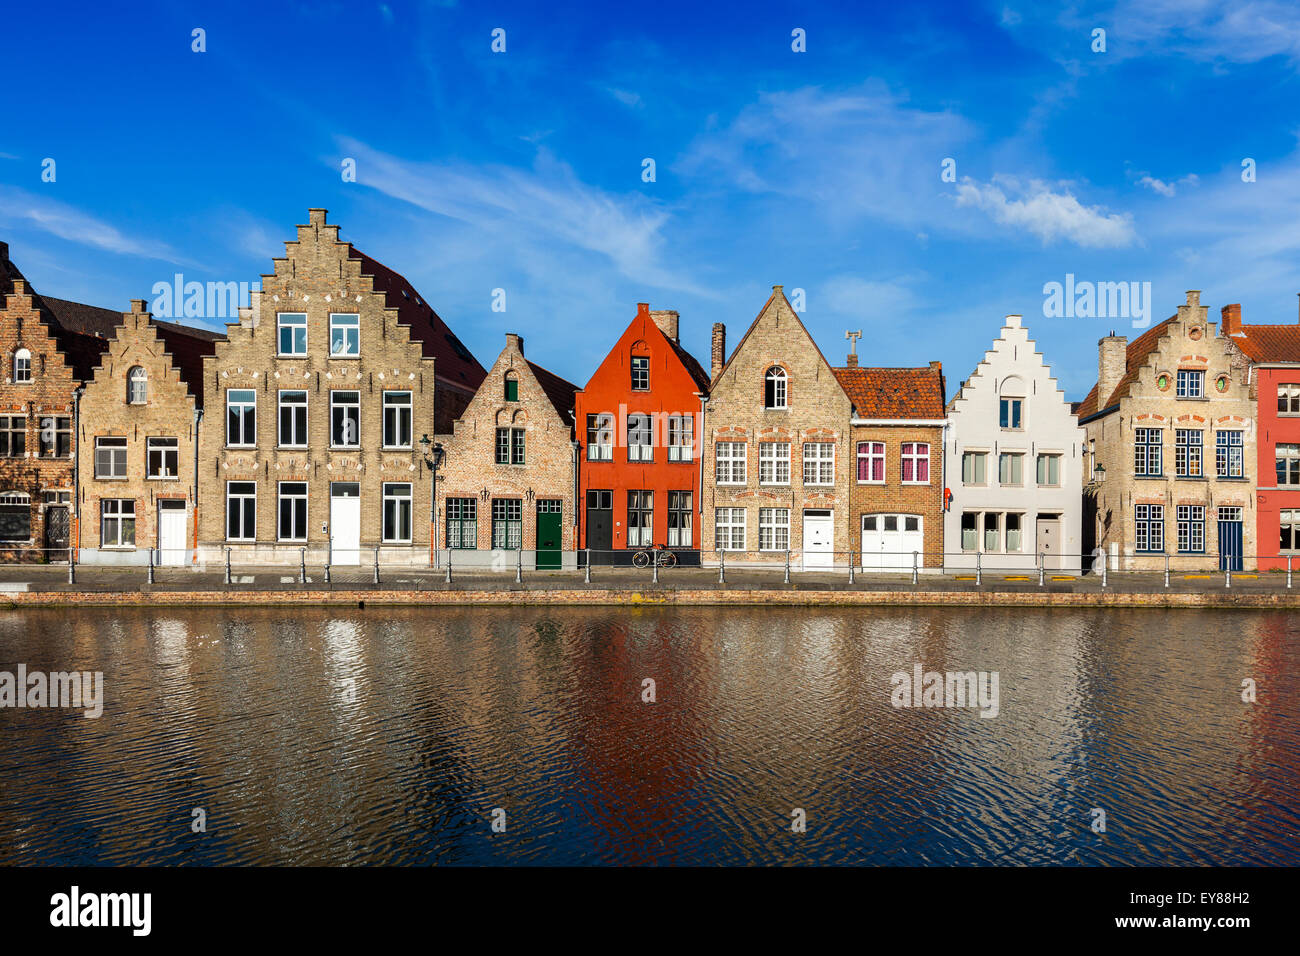 Papier peint typiquement européen - Europe cityscape view canal et des maisons médiévales. Bruges (Brugge), Belgique Banque D'Images